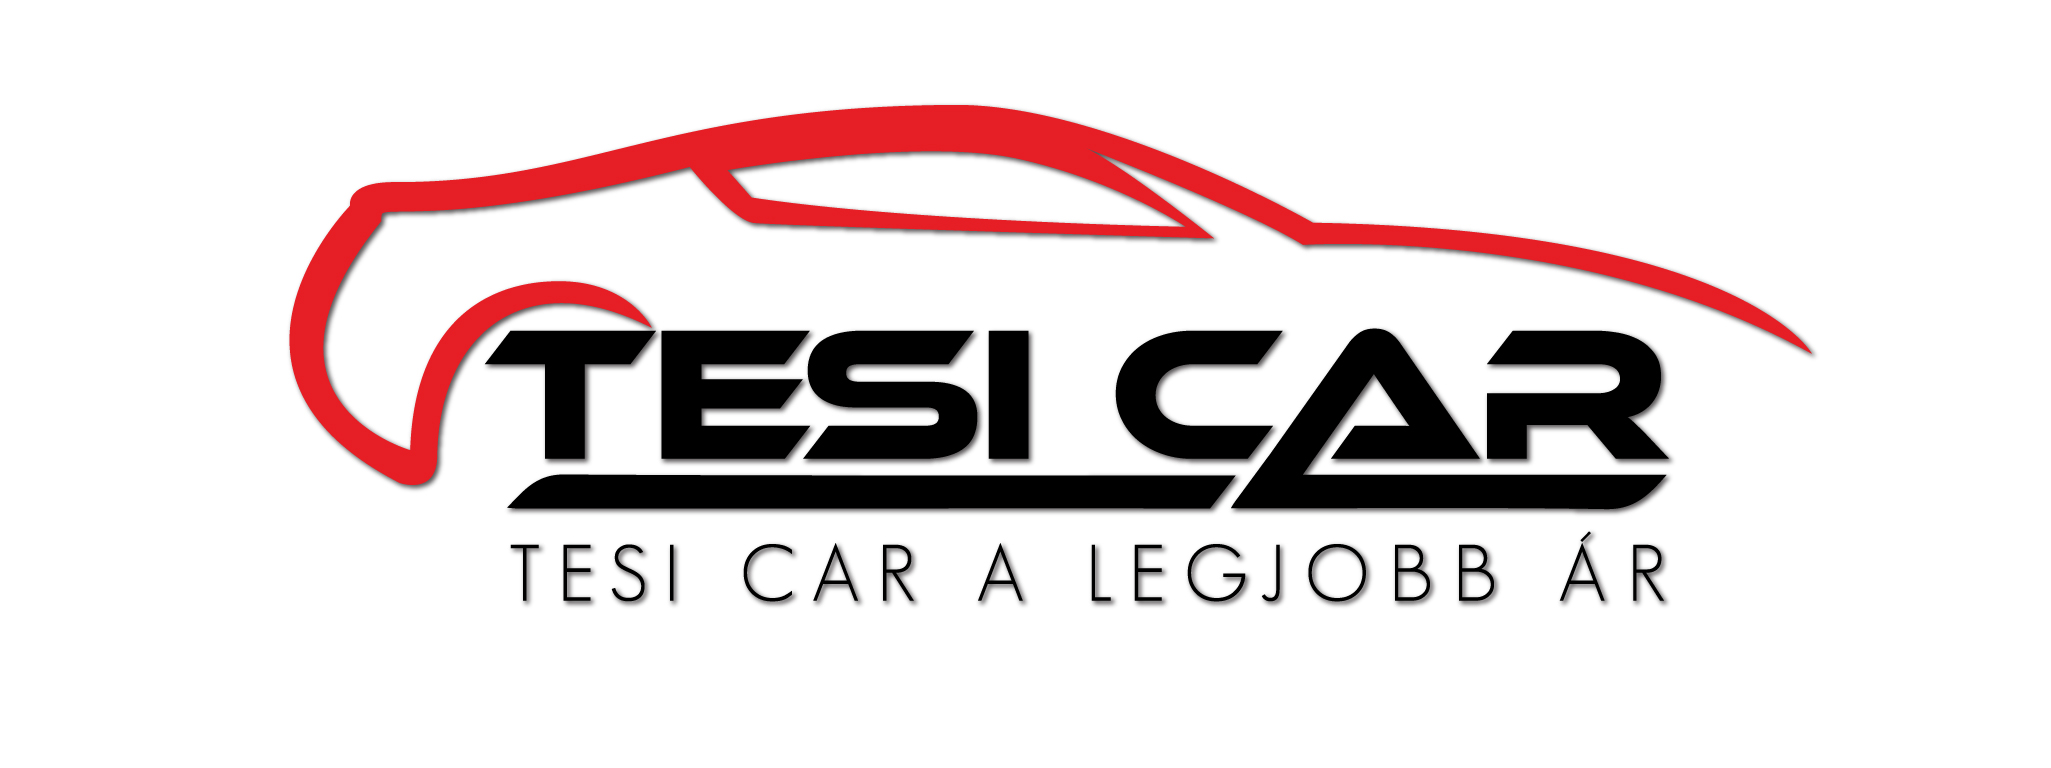 Tesi-Car Kft. - Autóbérlés, Autókölcsönzés, Autókereskedés